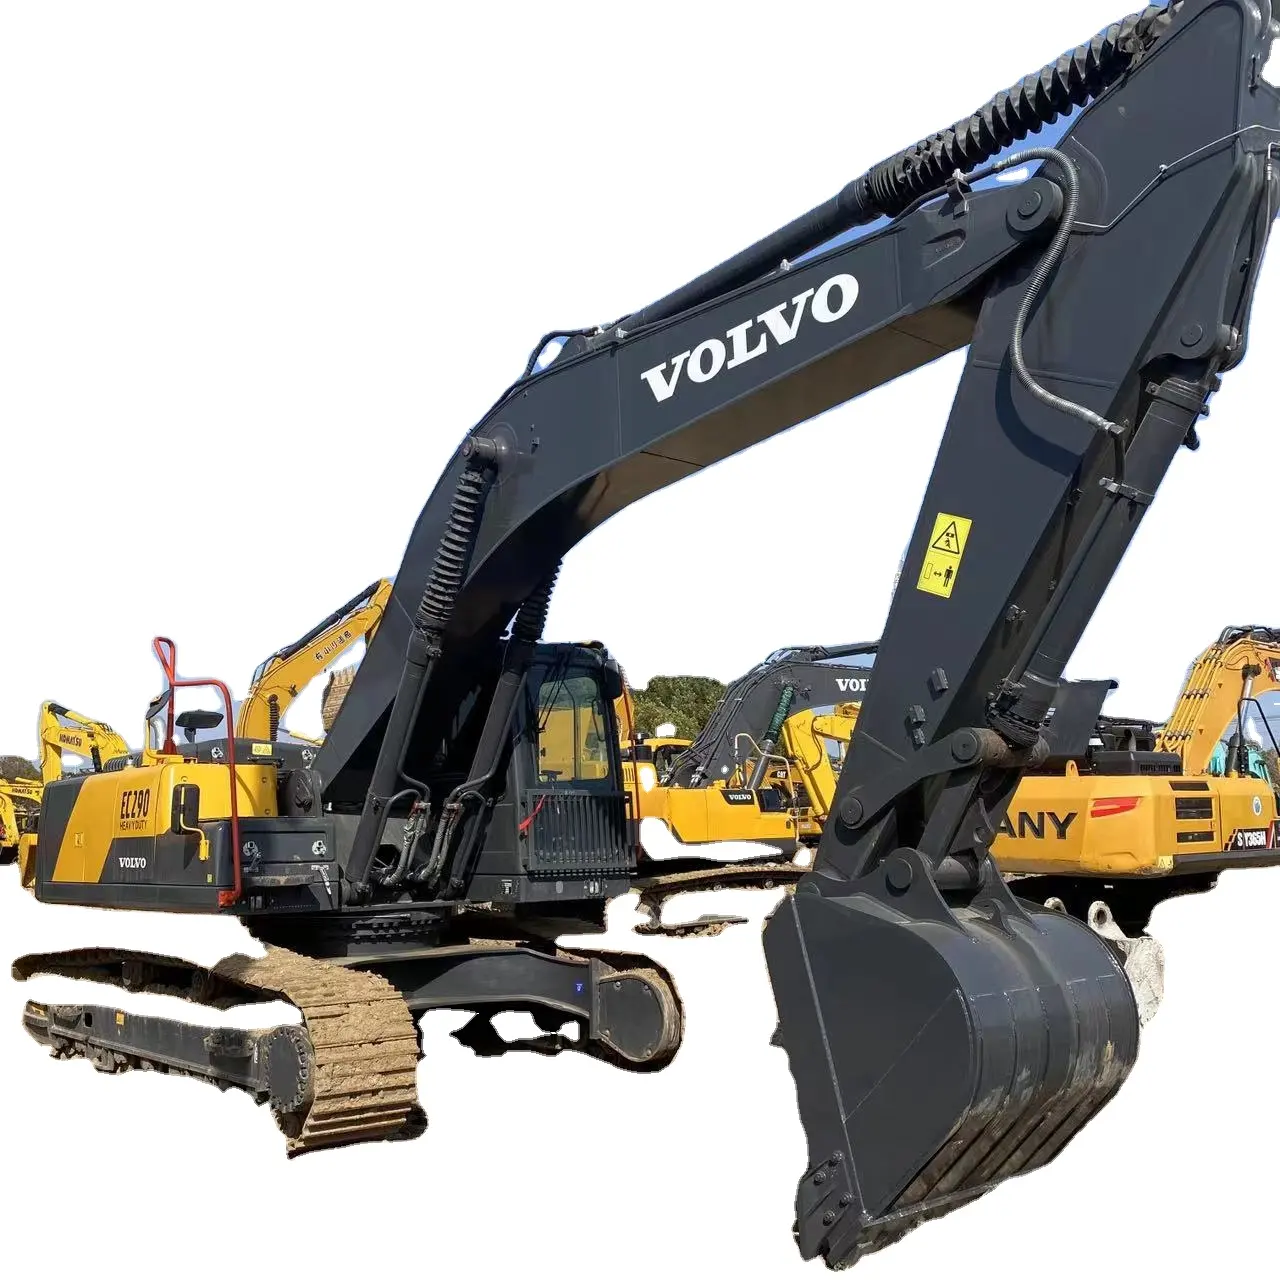 29TON Excavadora usada Volvo Ec290 Equipo de construcción pesada con bajo tiempo de trabajo y precio asequible